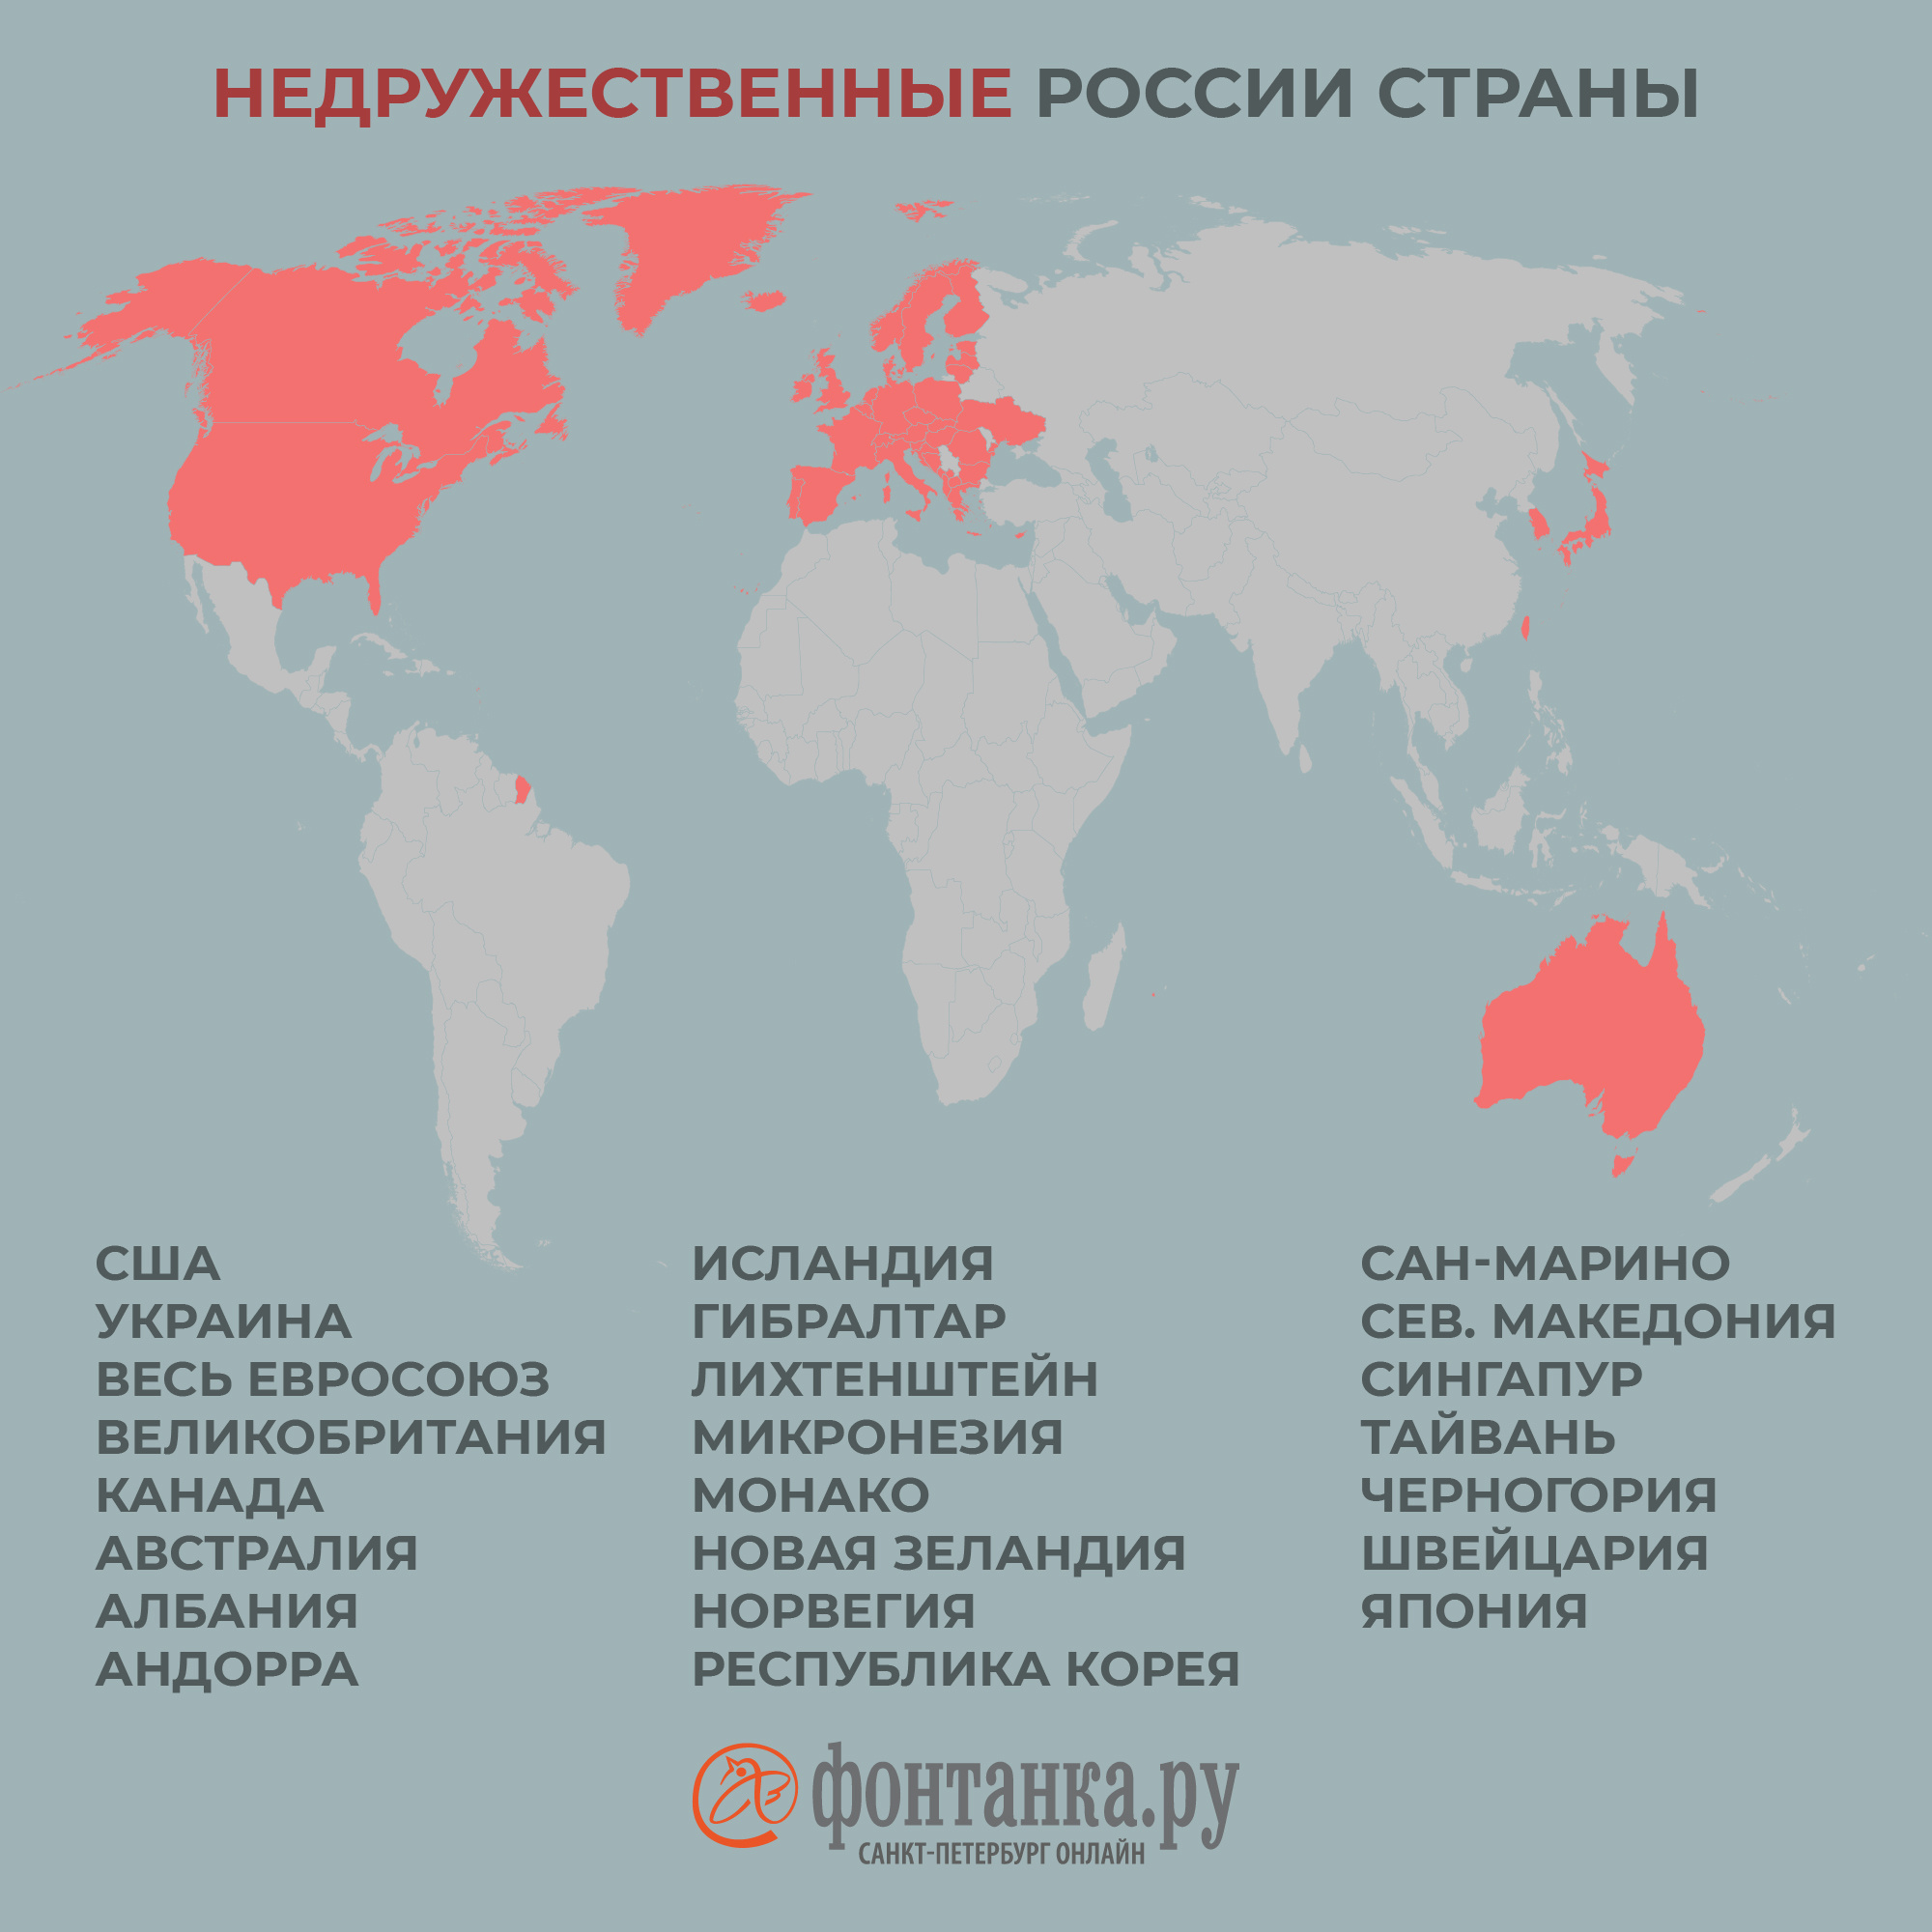 В России определились со списком недружественных стран. Их много - 7 марта  2022 - Фонтанка.Ру